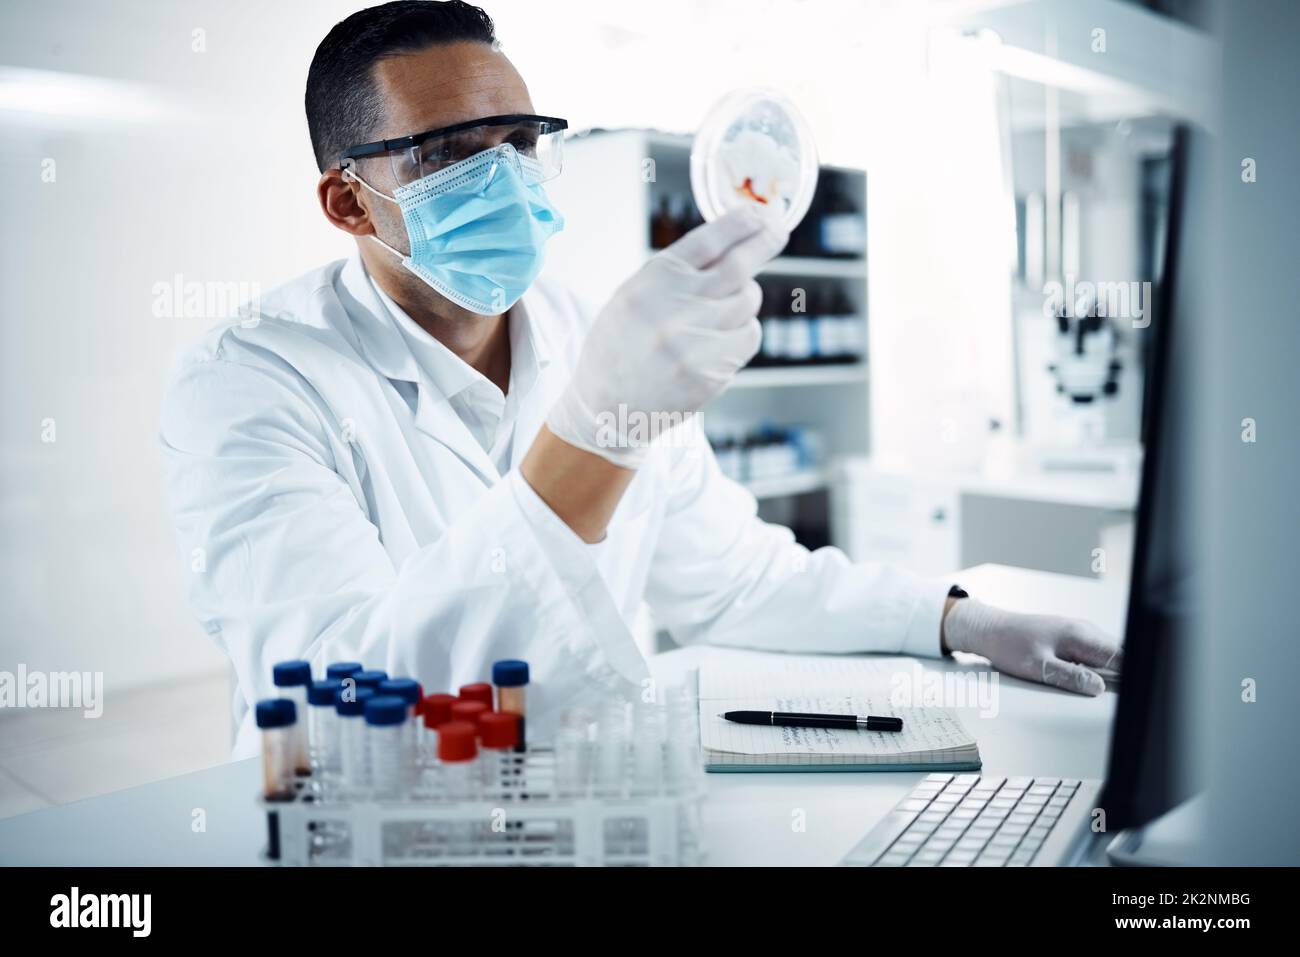 Les scientifiques ont le plus de culture. Photo d'un jeune scientifique effectuant des recherches médicales dans un laboratoire. Banque D'Images